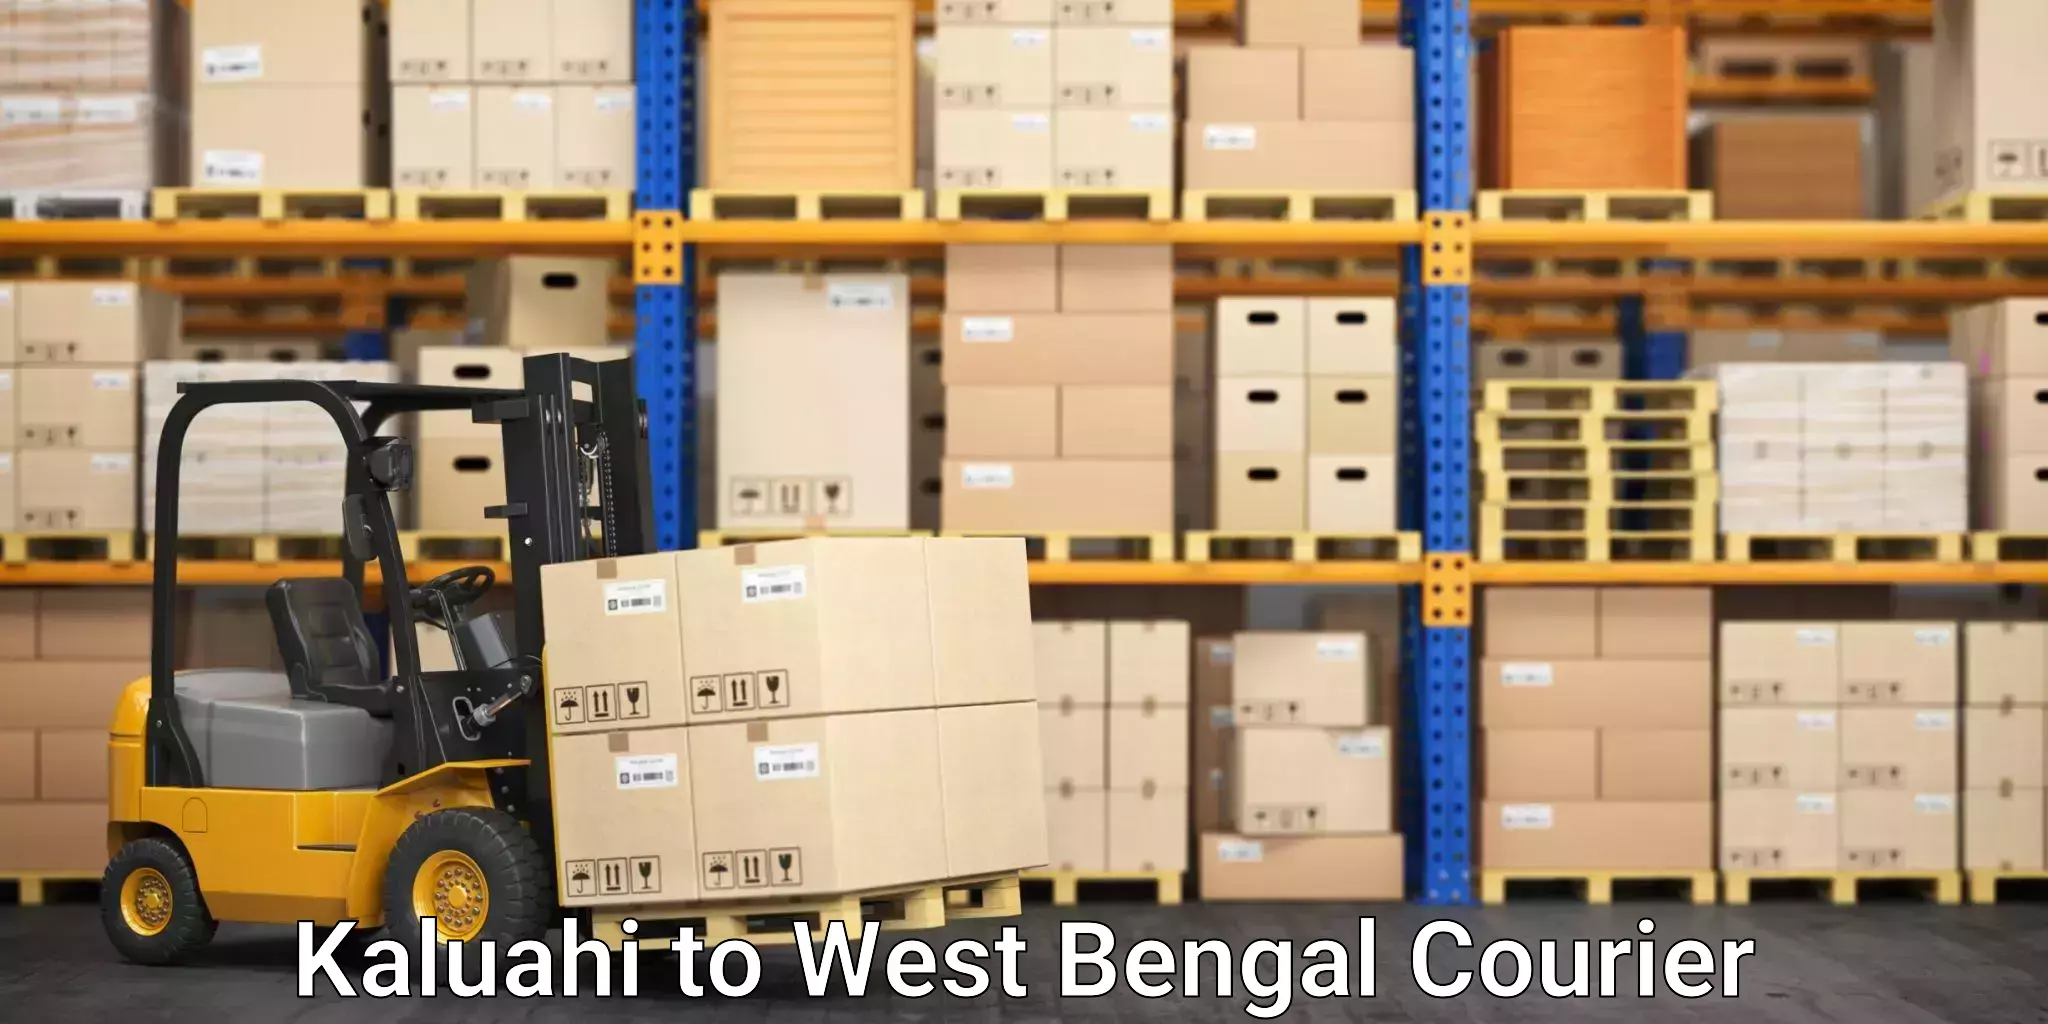 Furniture transport experts Kaluahi to Kolkata Port